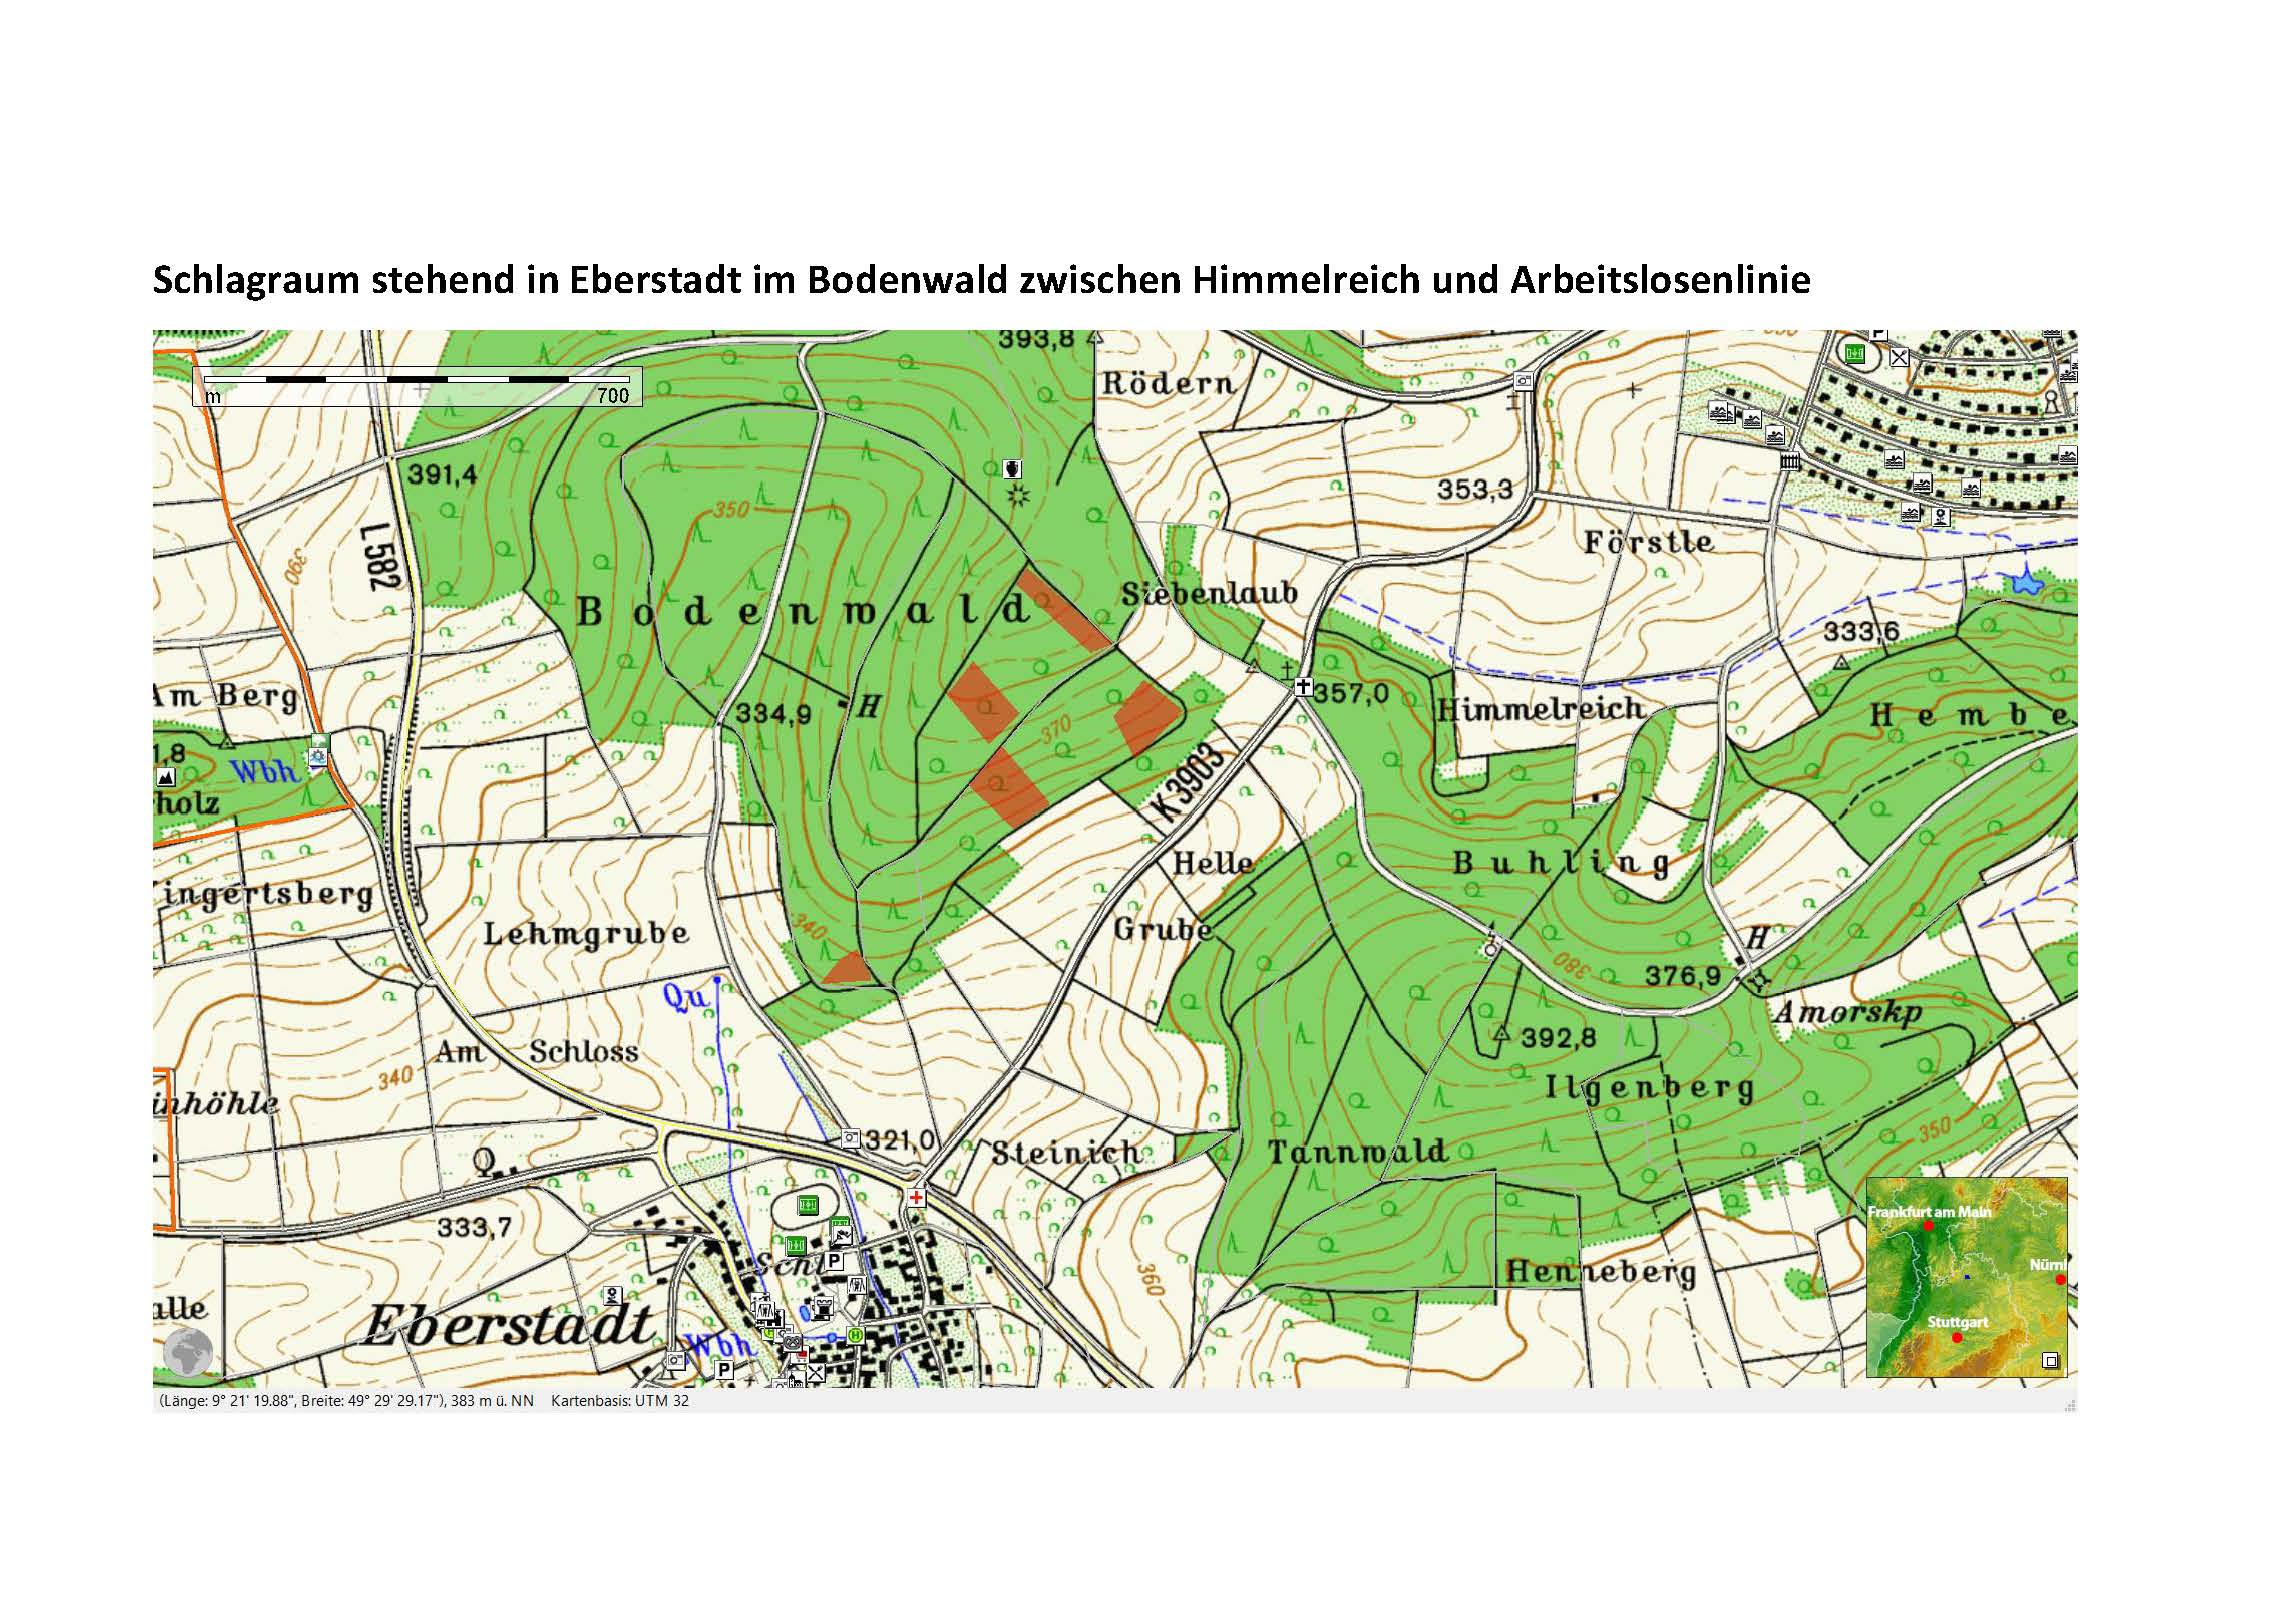 Karte_Schlagraum_stehend_im_Eberstadt_Himmelreich_und_Arbeitslosenlinie_an_mehrere_Orten.jpg - 357,78 kB